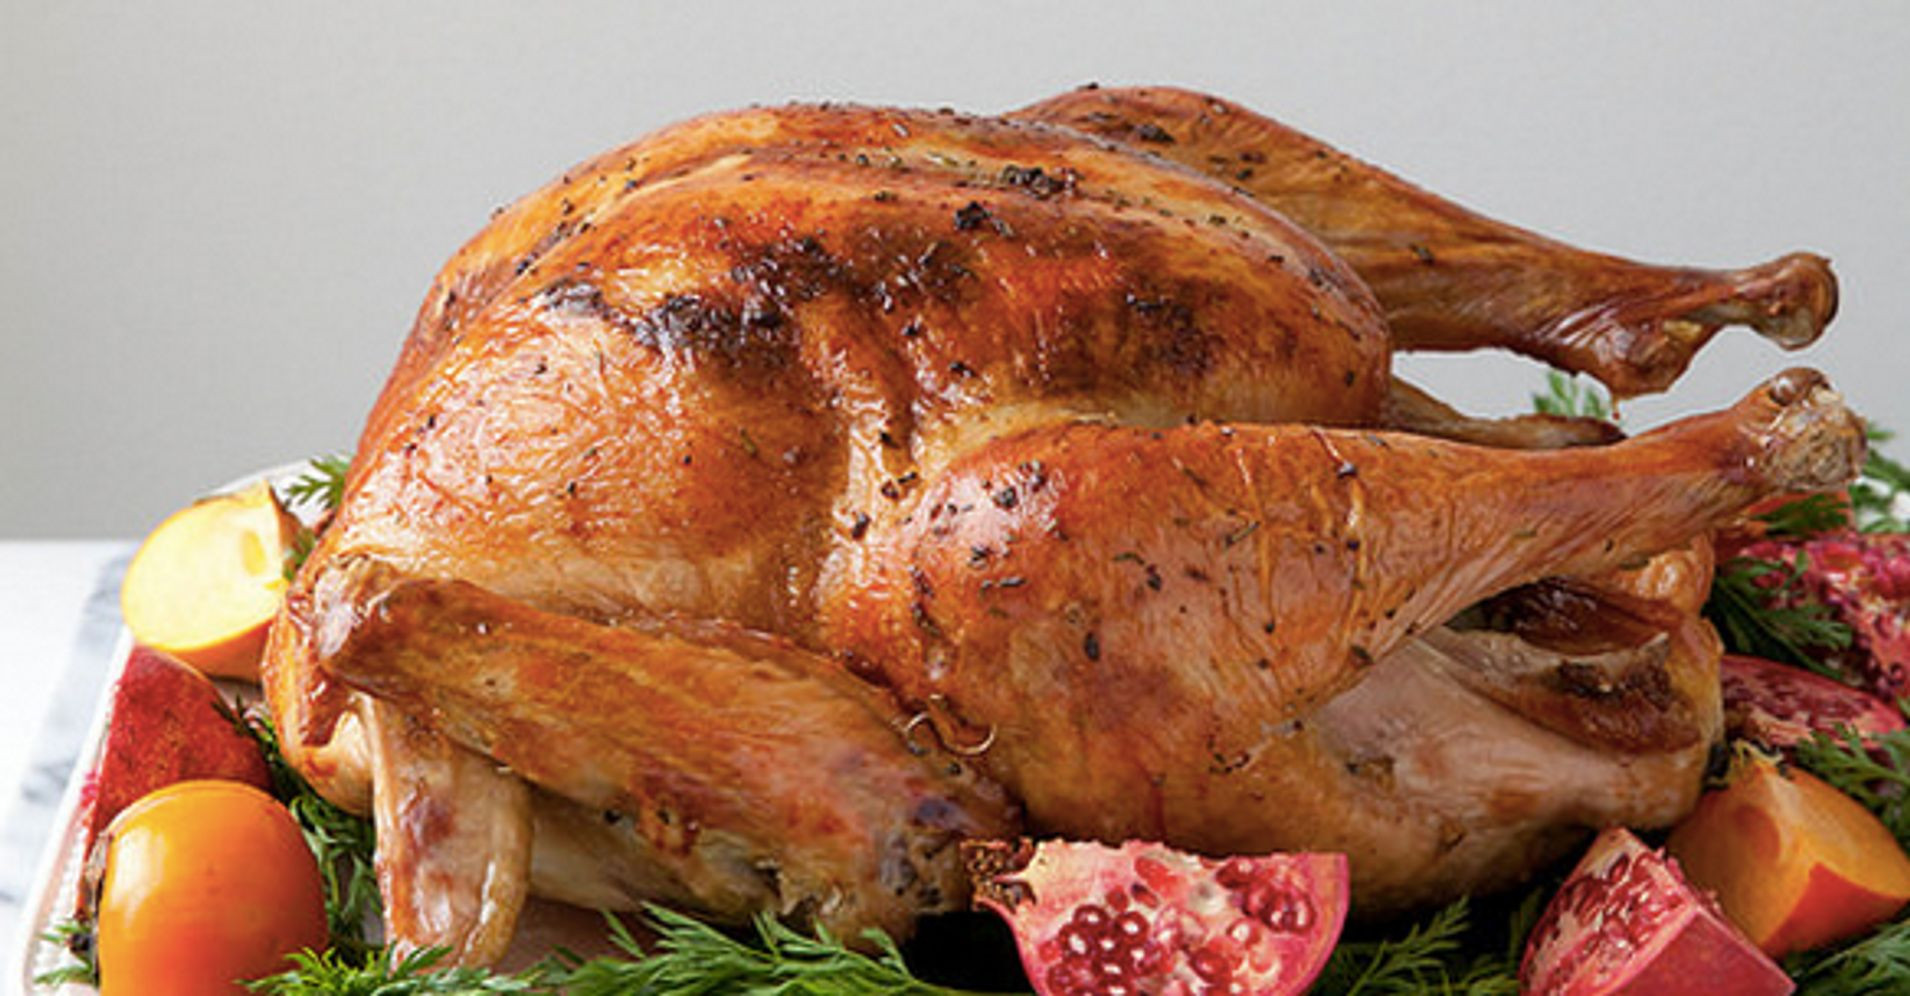 Giant Thanksgiving Dinner 2019
 The Best Turkey Recipes For Thanksgiving